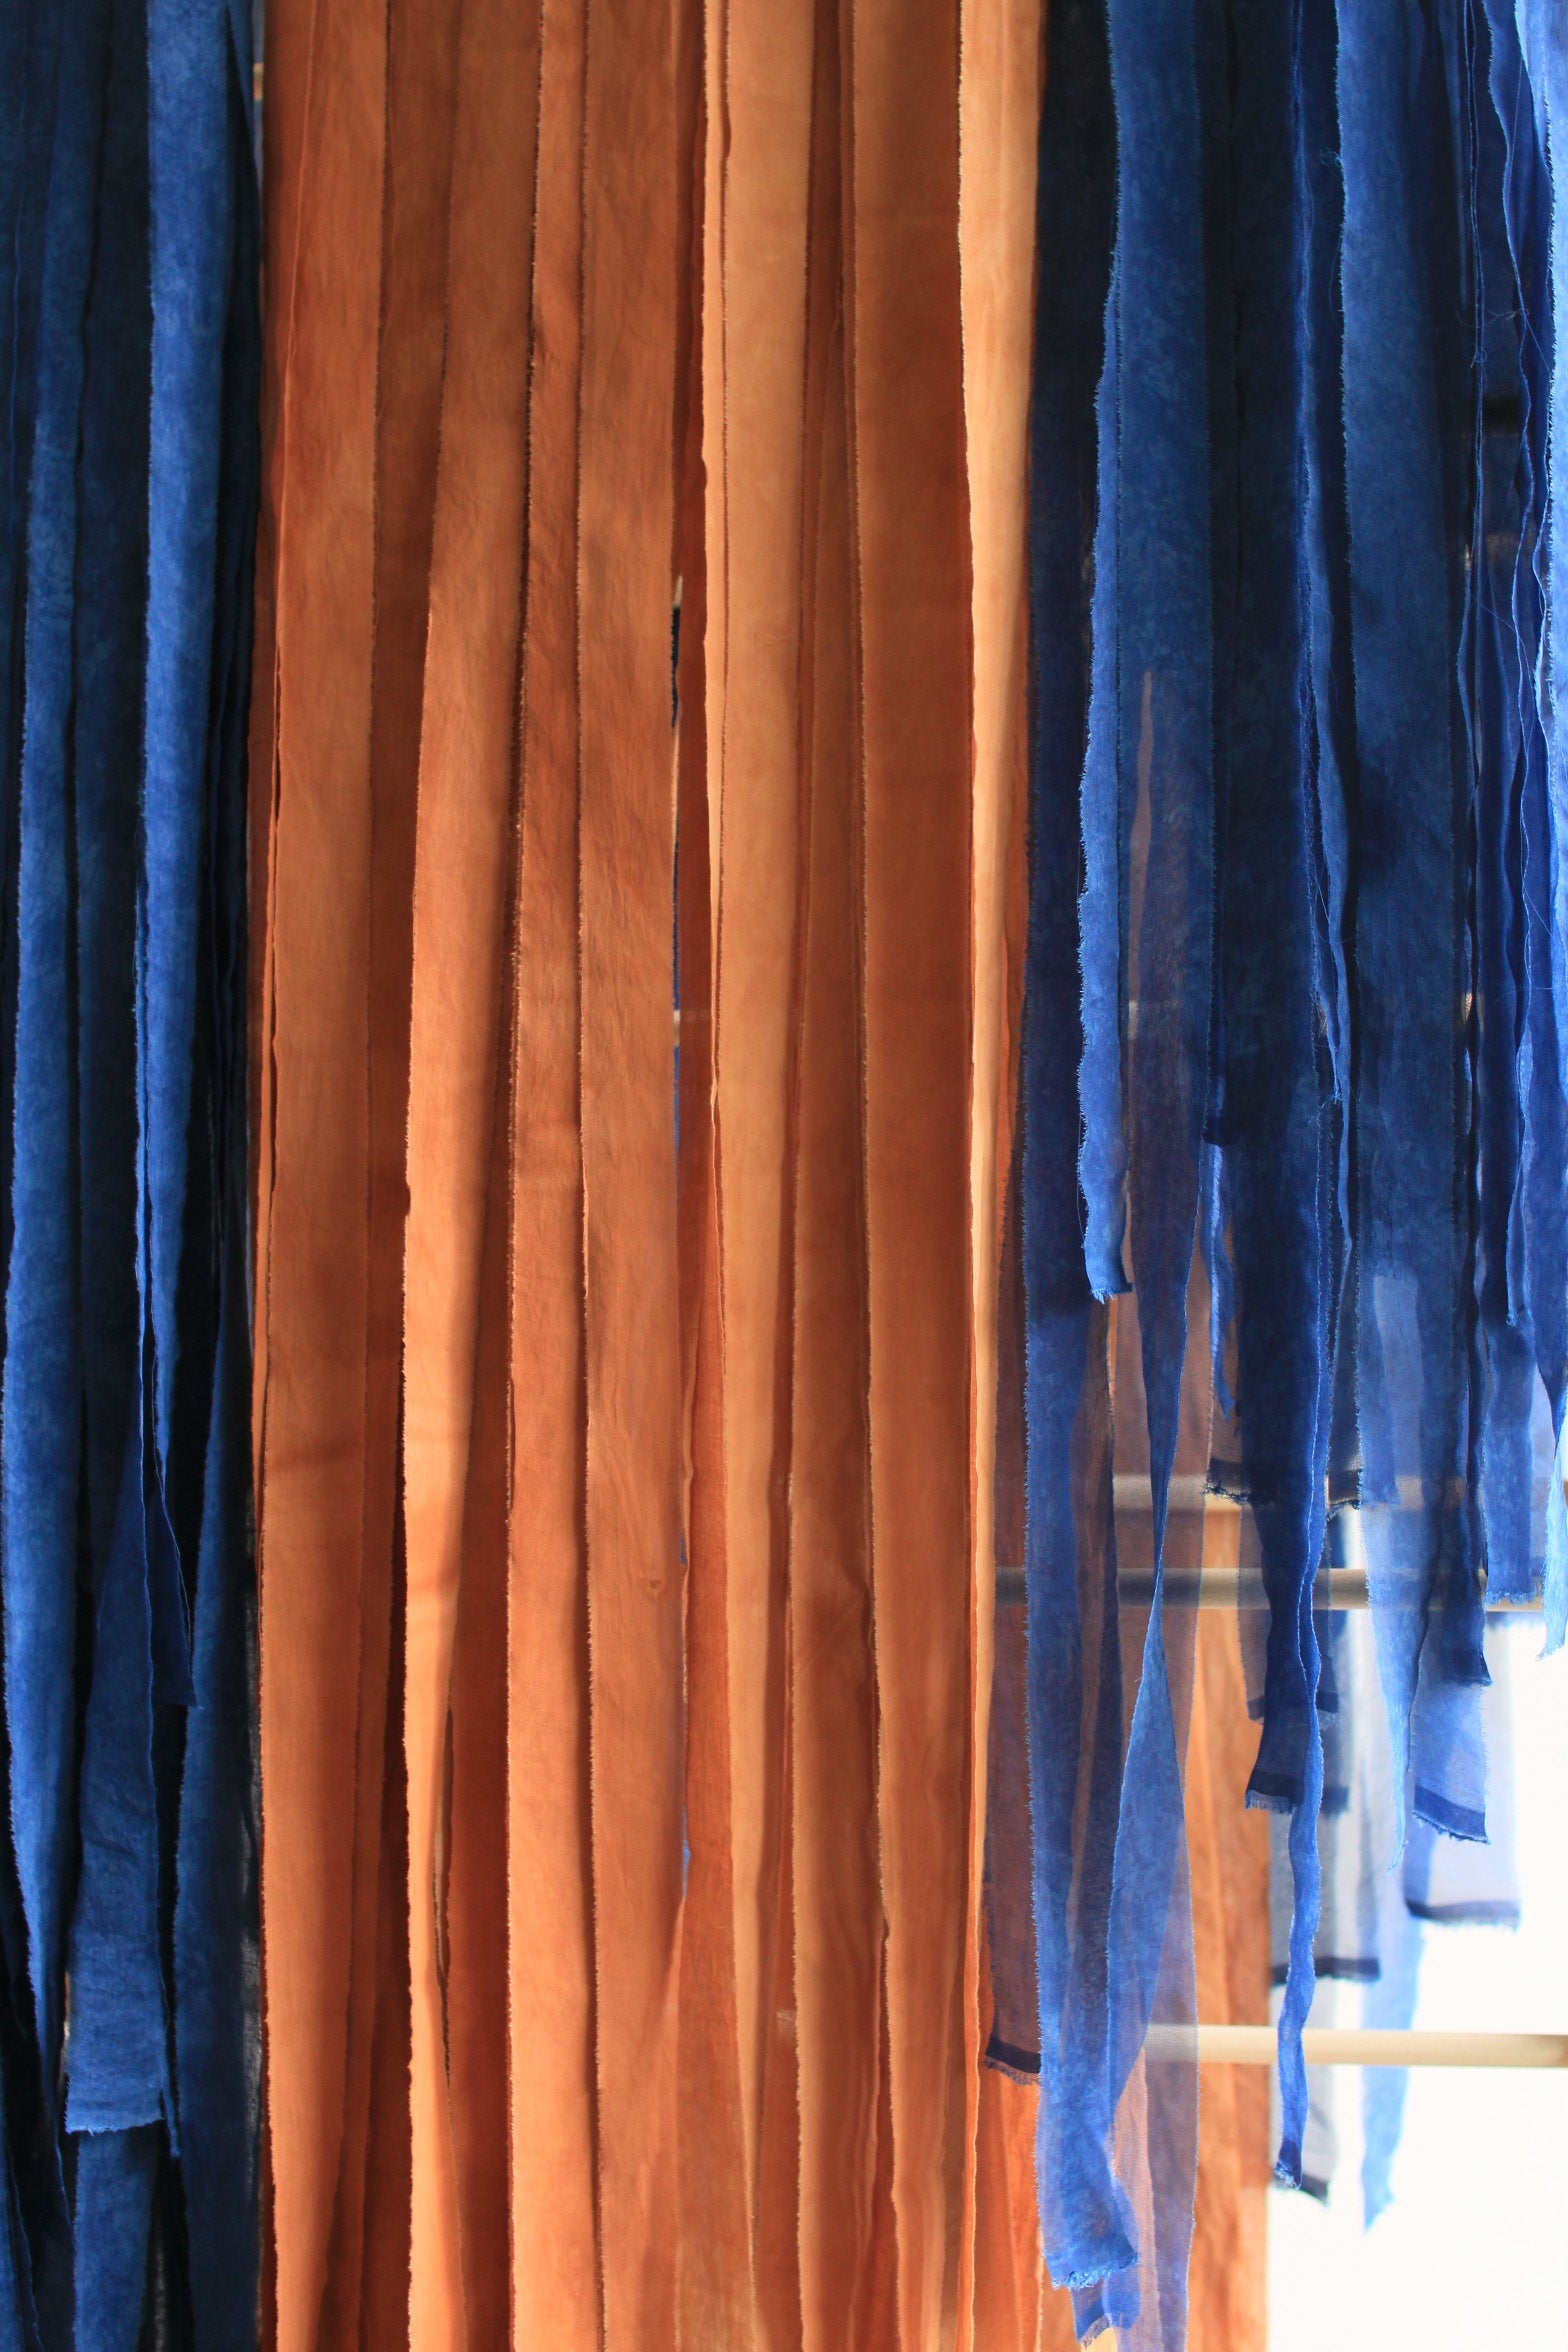 Ruban en popeline de coton - couleur "bleu" - largeur 3cm, longueur 2m